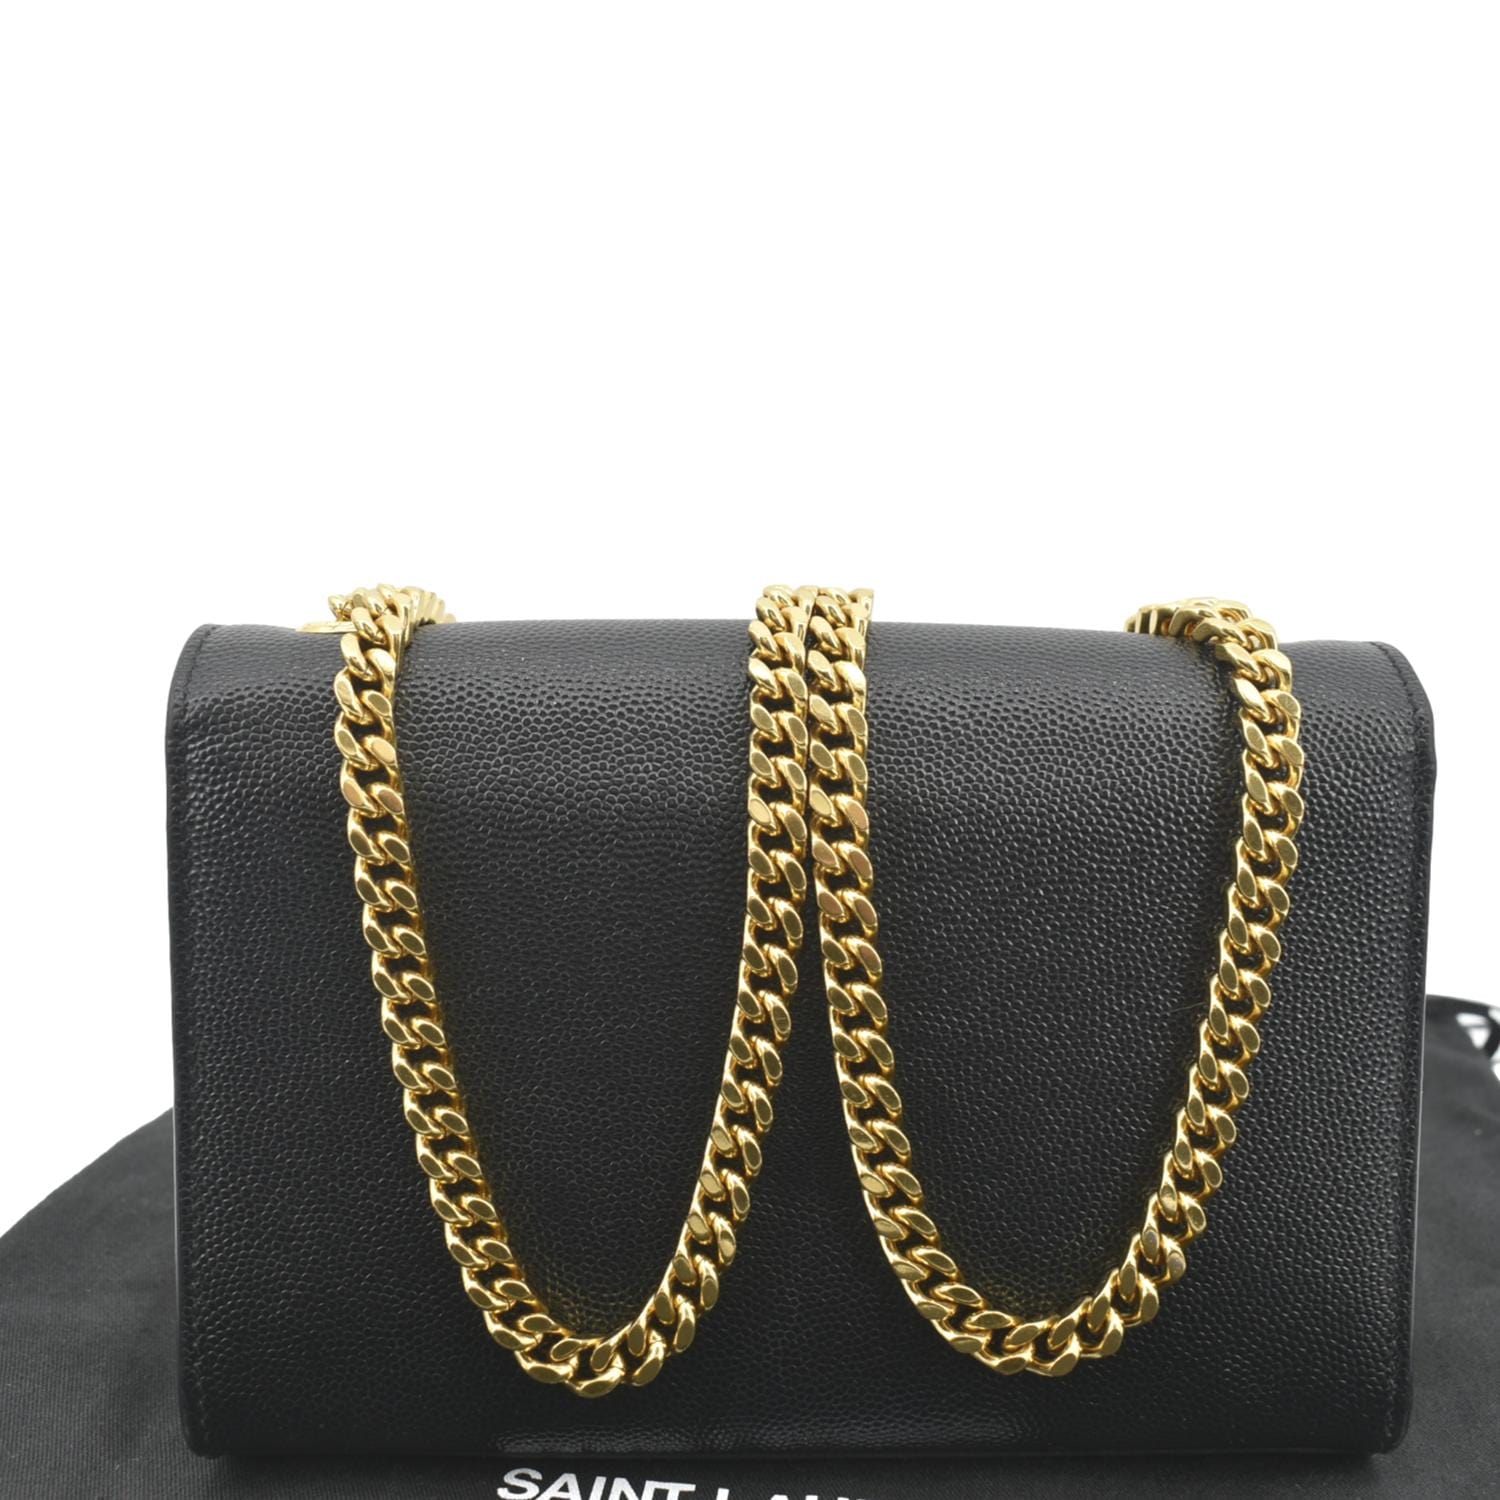 Saint Laurent Small Kate Leather Shoulder Bag - Black